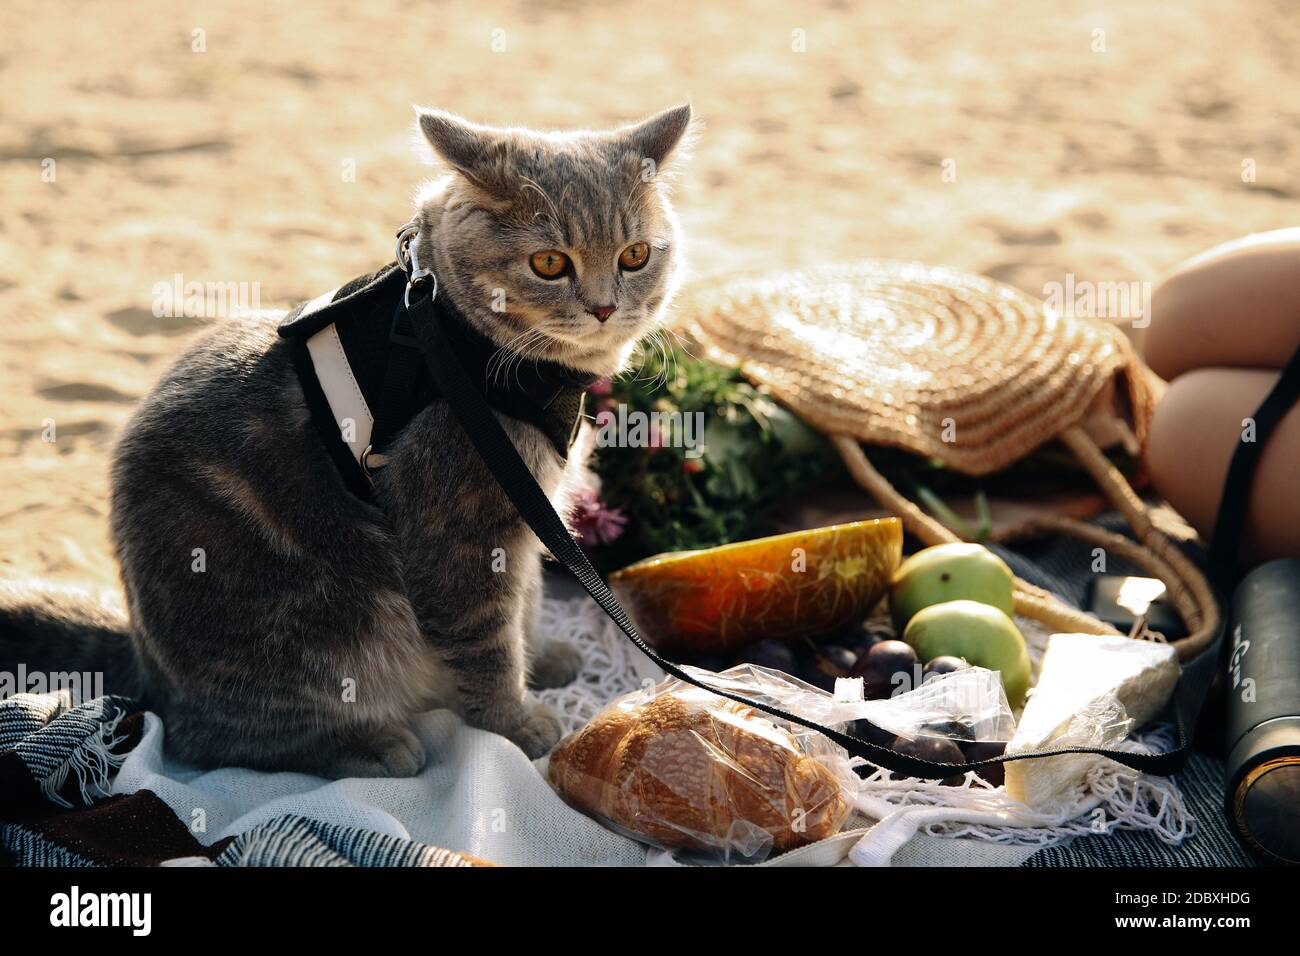 Cette photo montre un chat surprise écossais gris droit avec une laisse sur la plage par une journée ensoleillée Banque D'Images